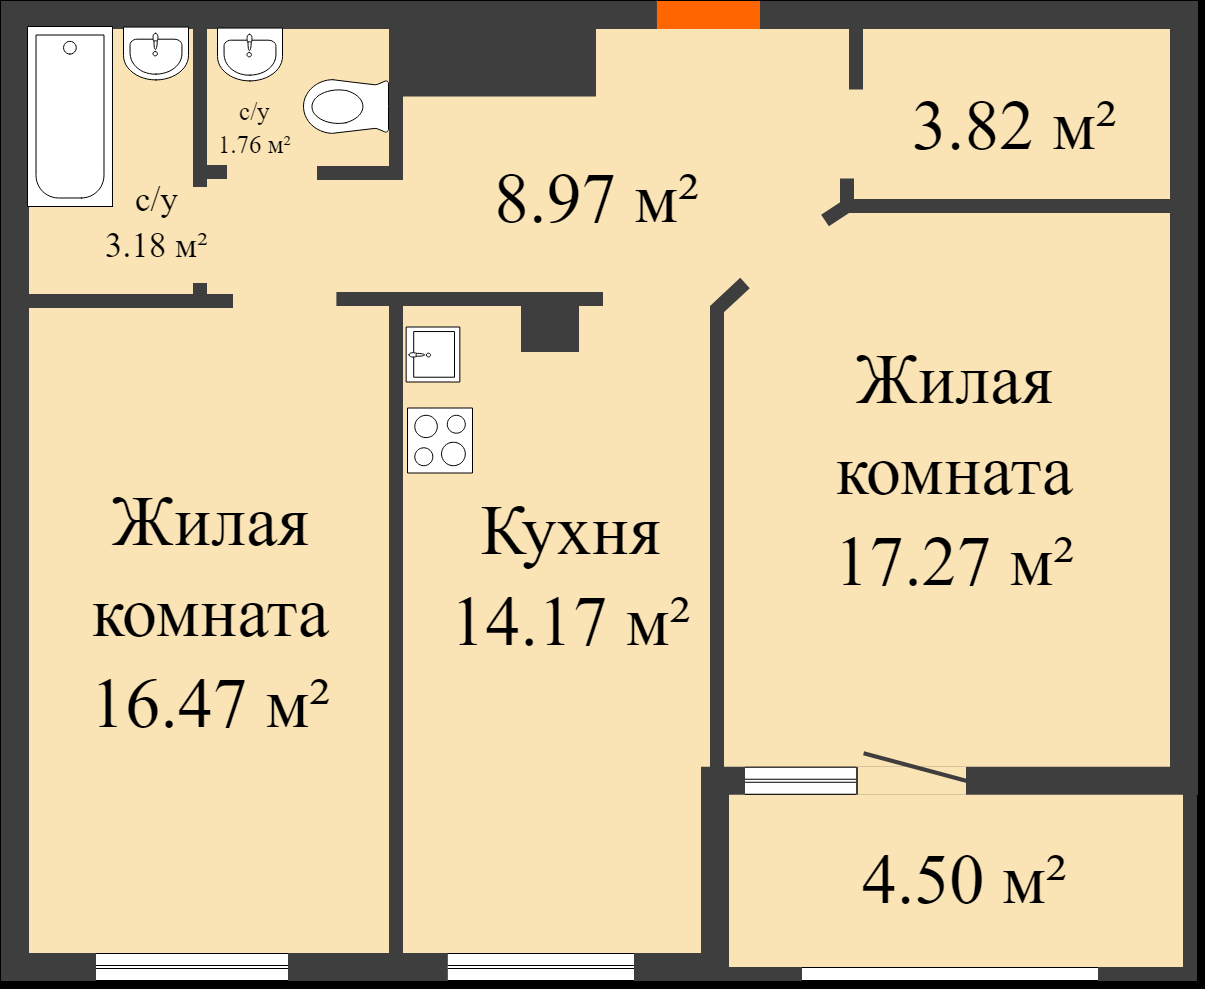 Планировка двухкомнатной квартиры с выходом на лоджию из комнаты